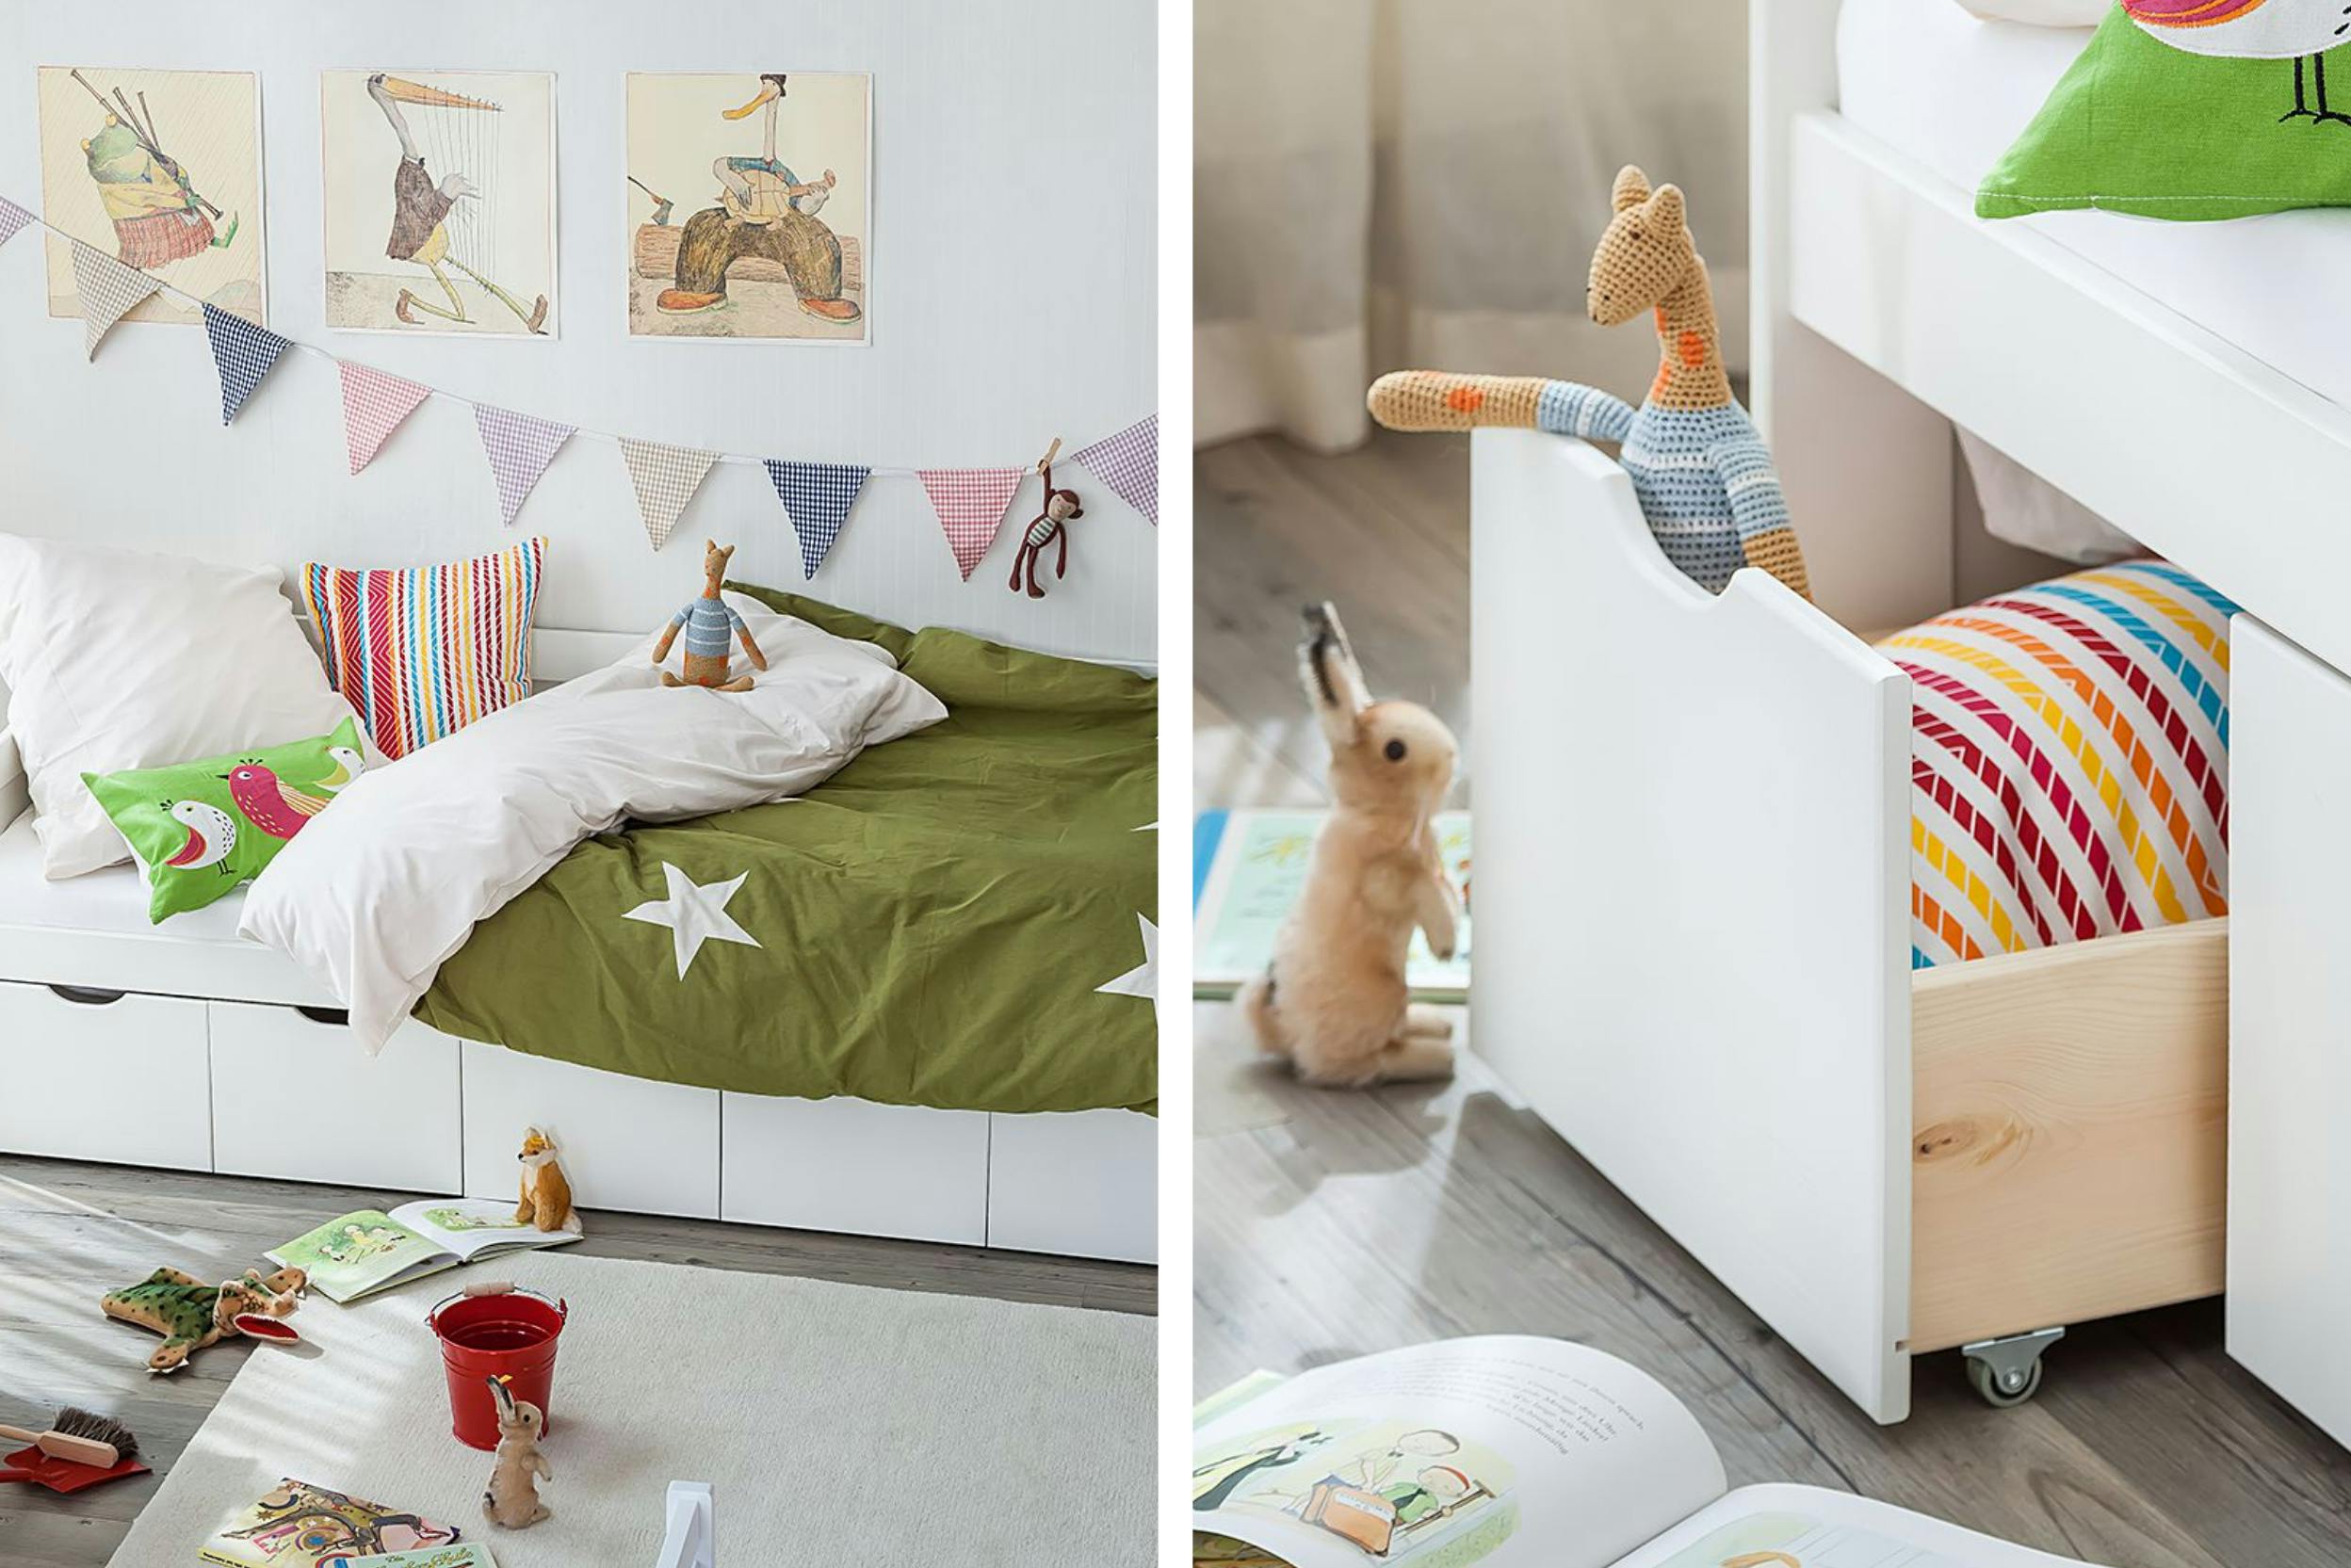 Kinderbett mit integrierten Schubladen für Stauraum